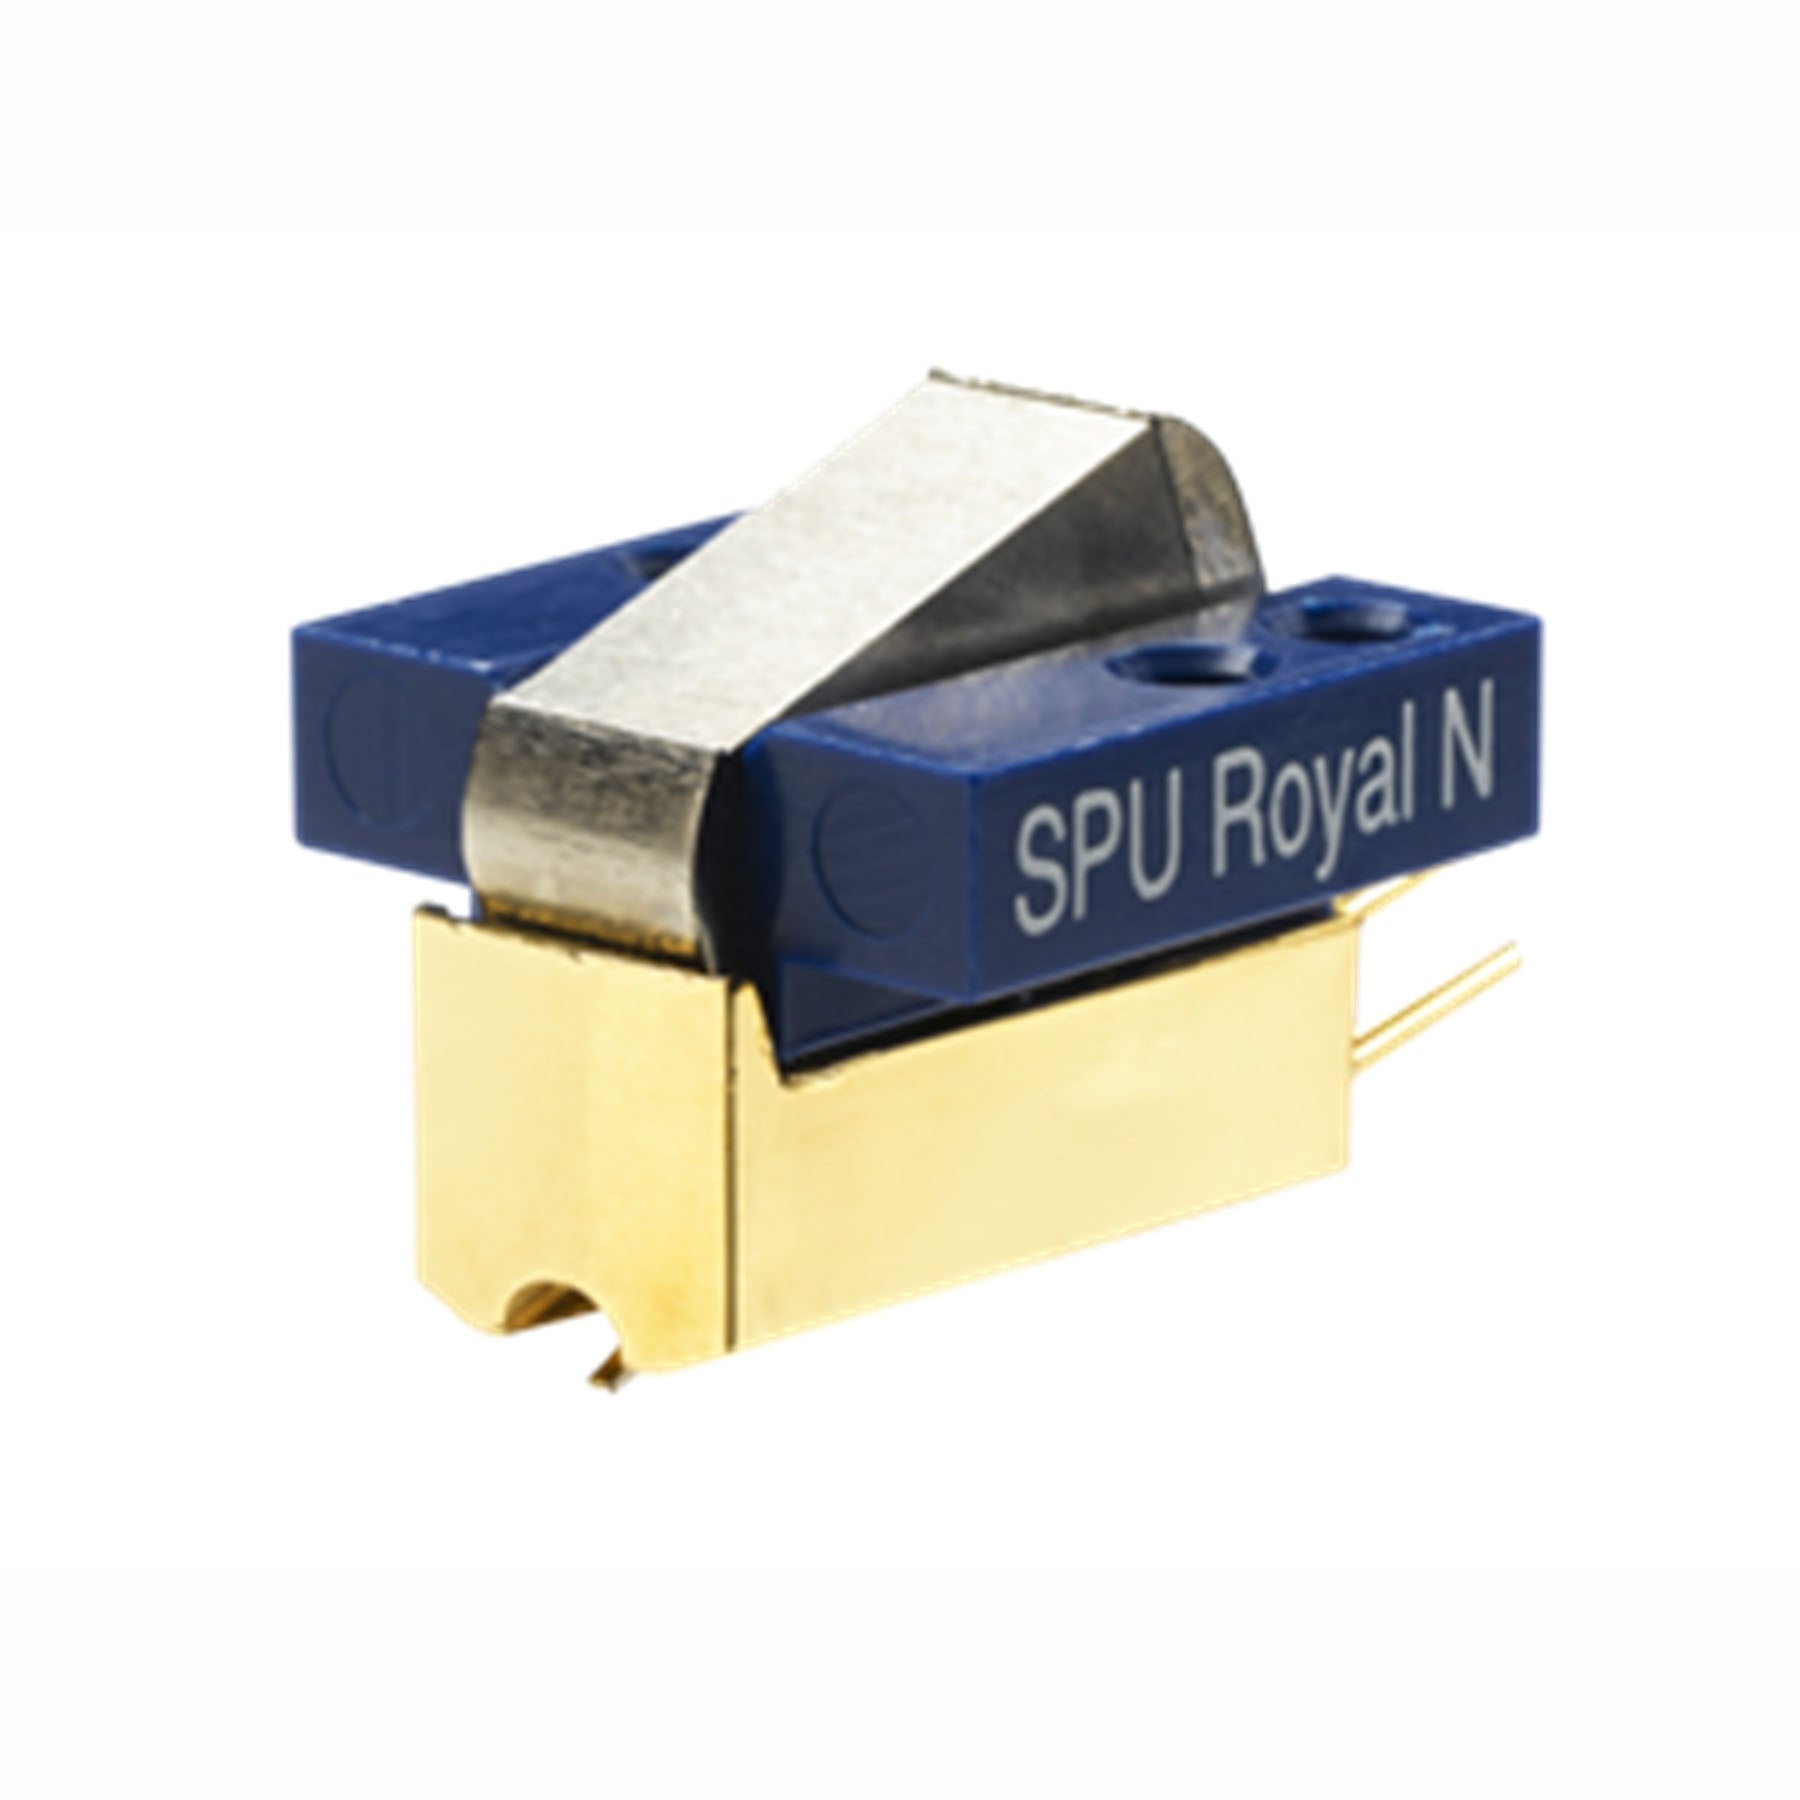 Ortofon Hi-Fi SPU Royal N Moving Coil Cartridge